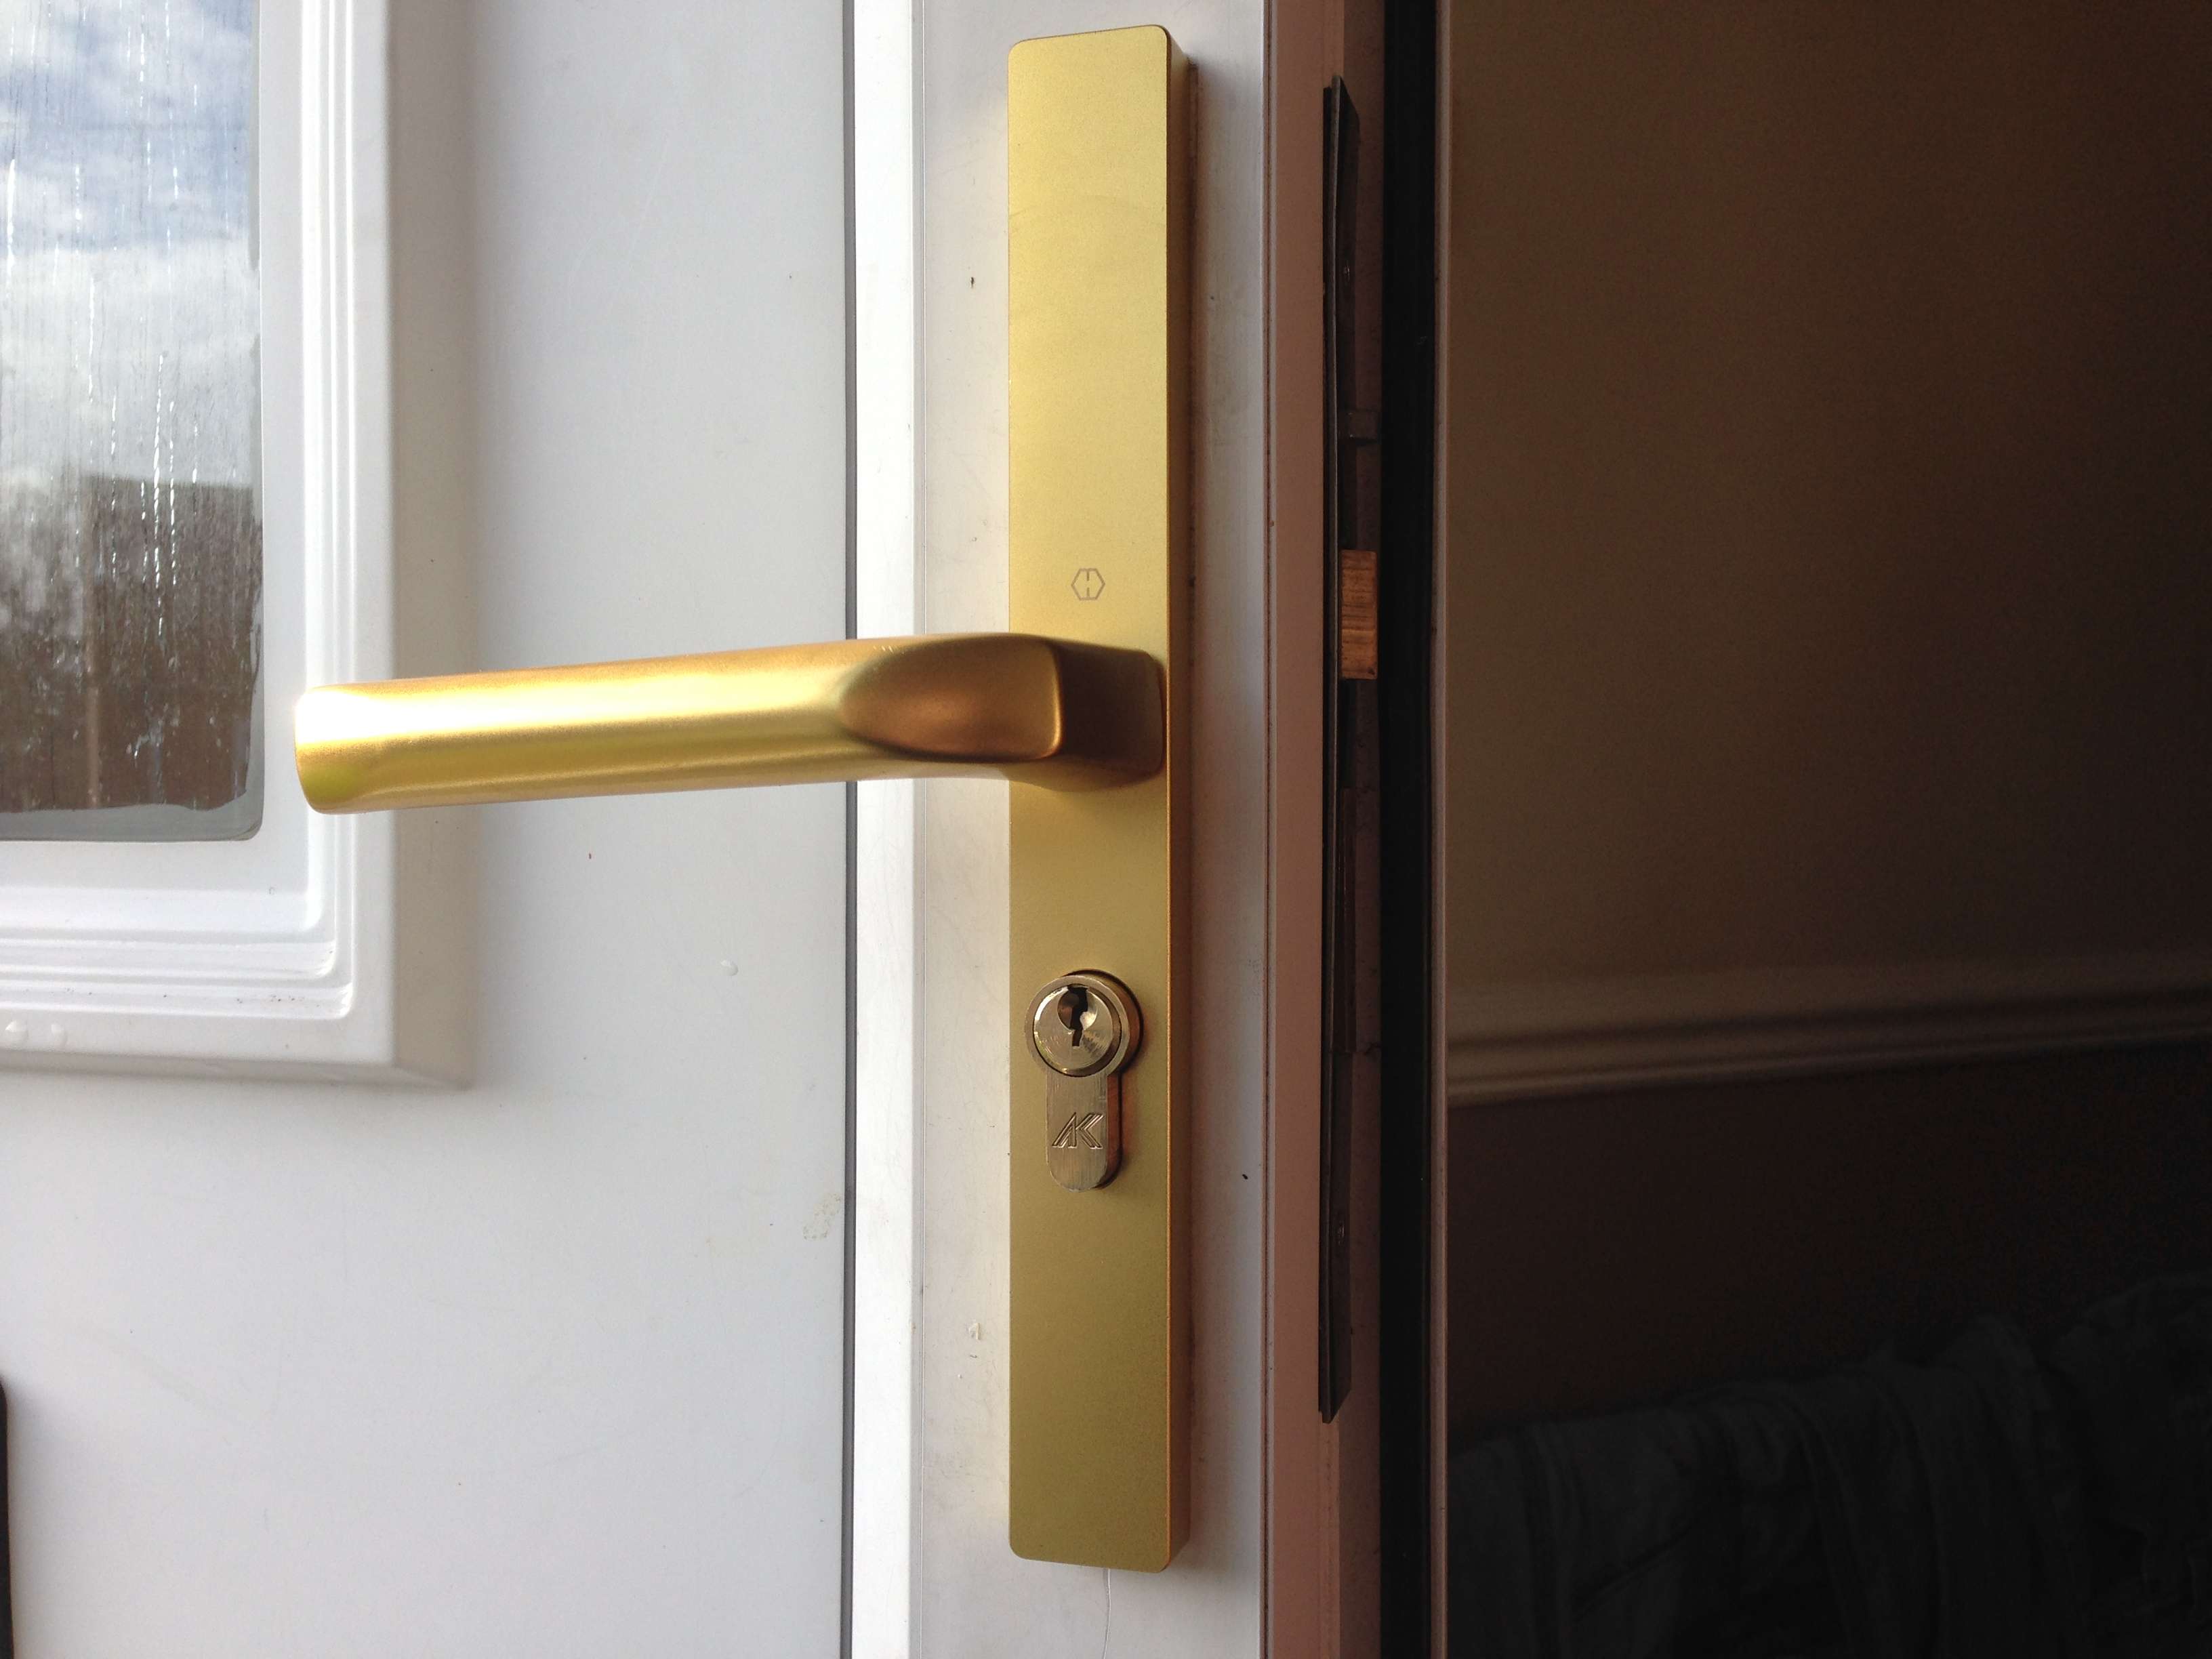 new door handles